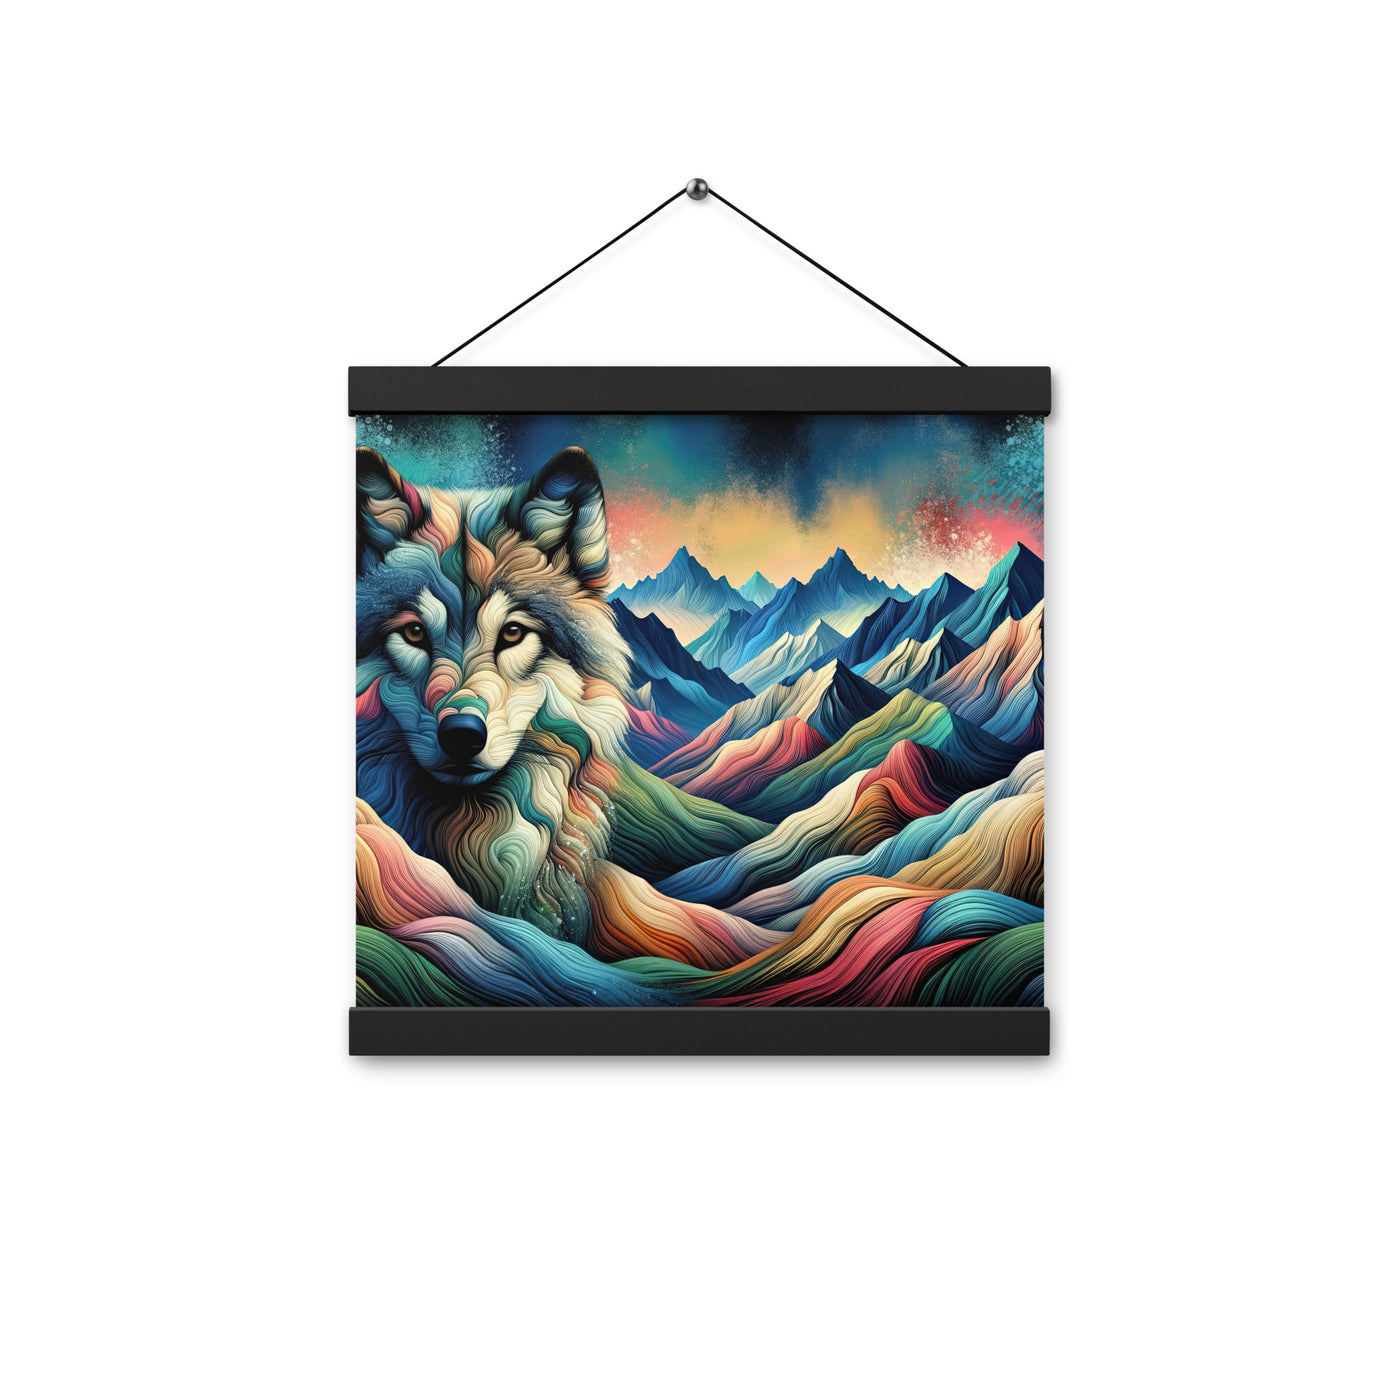 Traumhaftes Alpenpanorama mit Wolf in wechselnden Farben und Mustern (AN) - Premium Poster mit Aufhängung xxx yyy zzz 30.5 x 30.5 cm